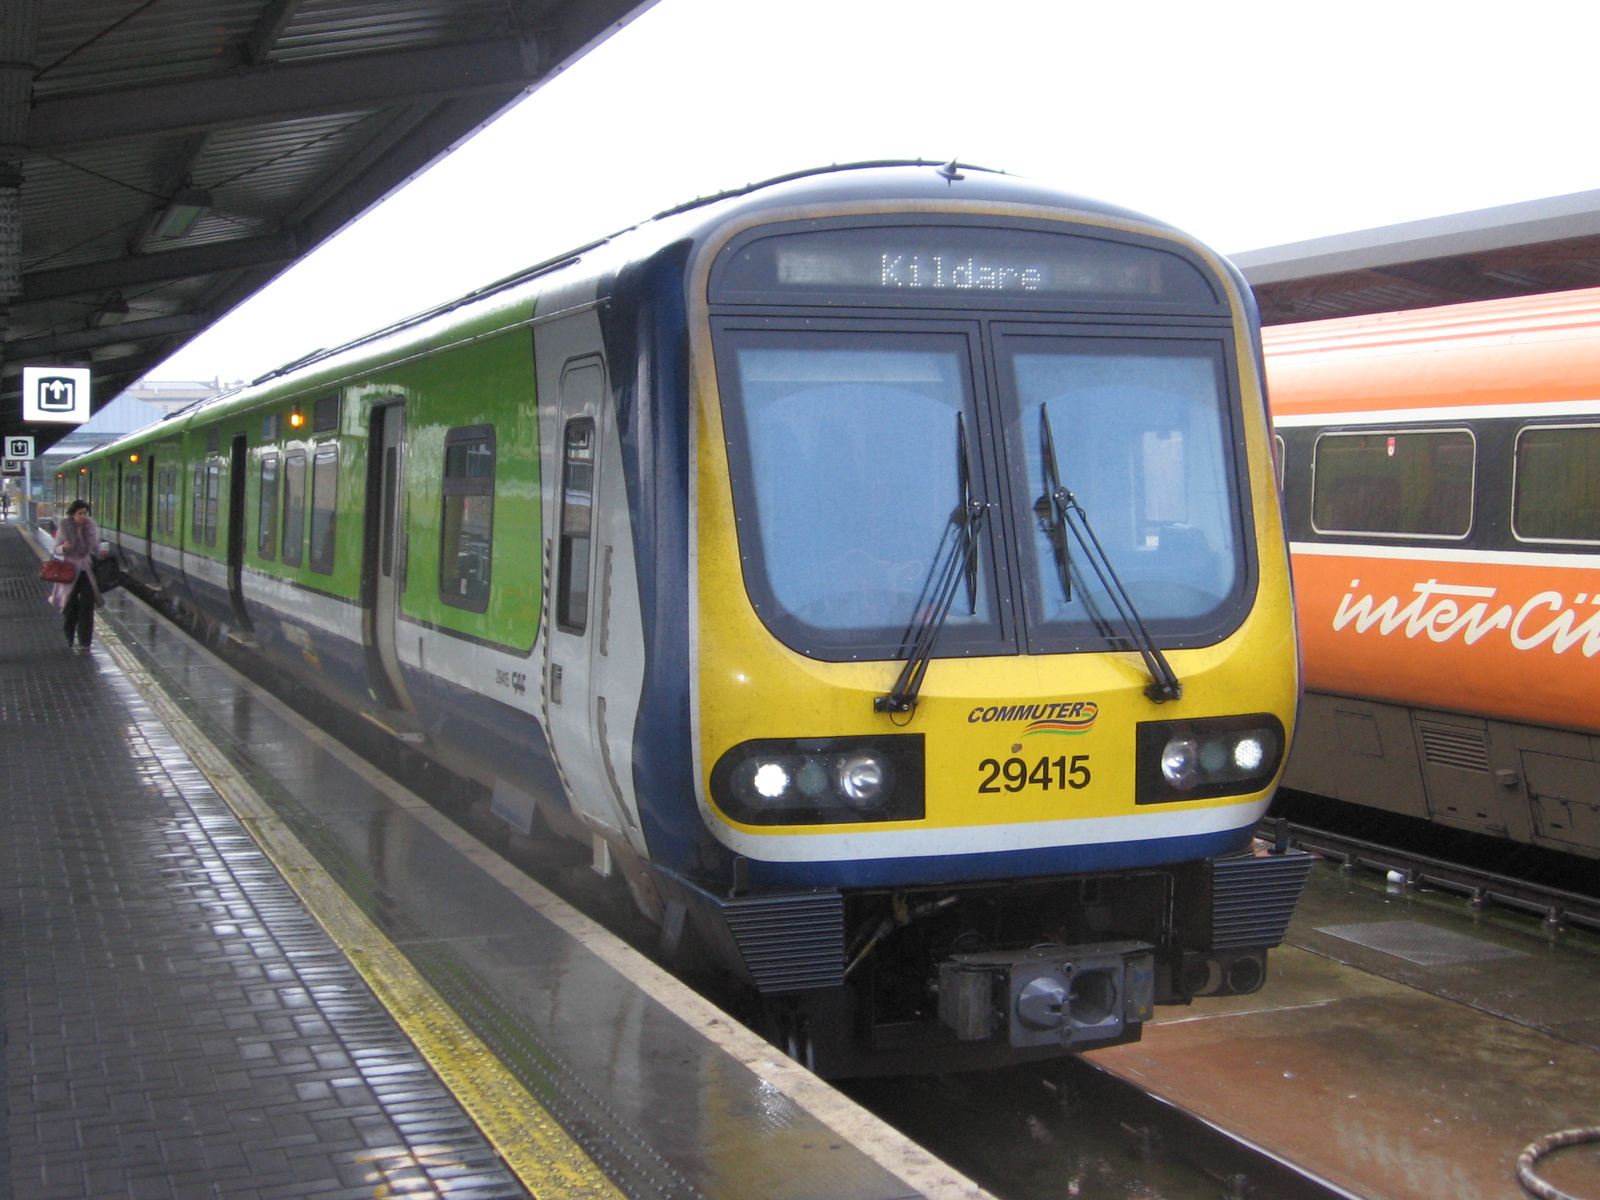 Iarnrod Eireann 29415 Dublin-Kildare Commuter 2